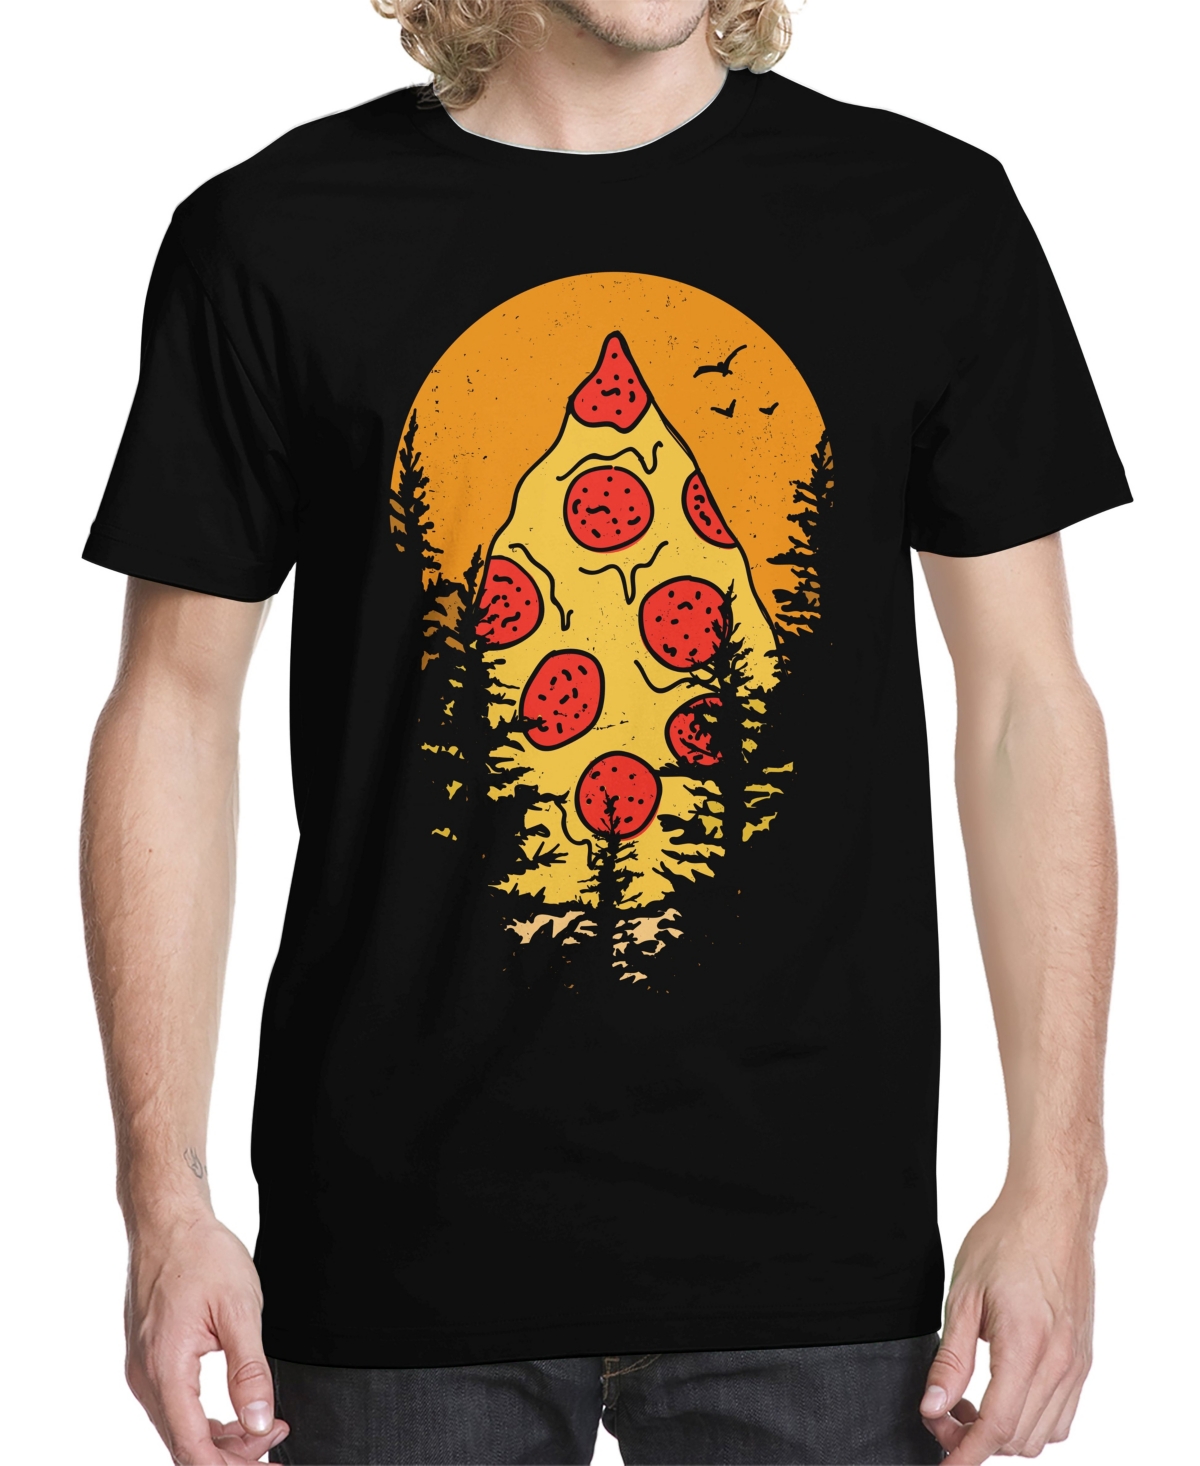 Men's Mount Pizza Graphic T-shirt - Black